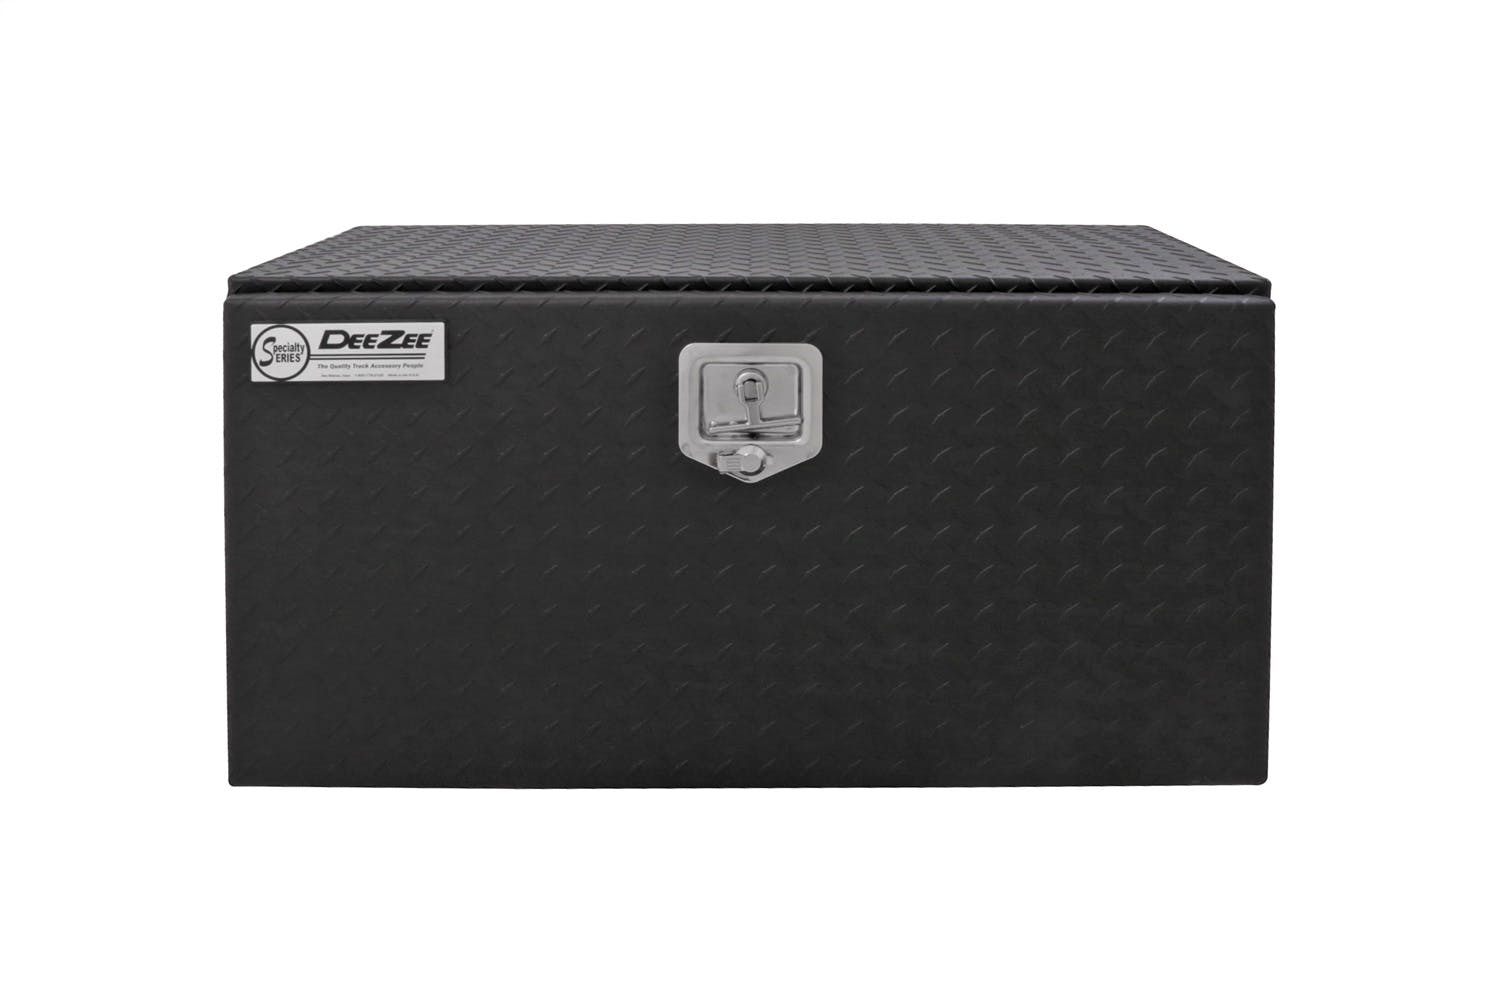 Dee Zee DZ77TB Tool Box - Specialty Underbed Black BT Alum